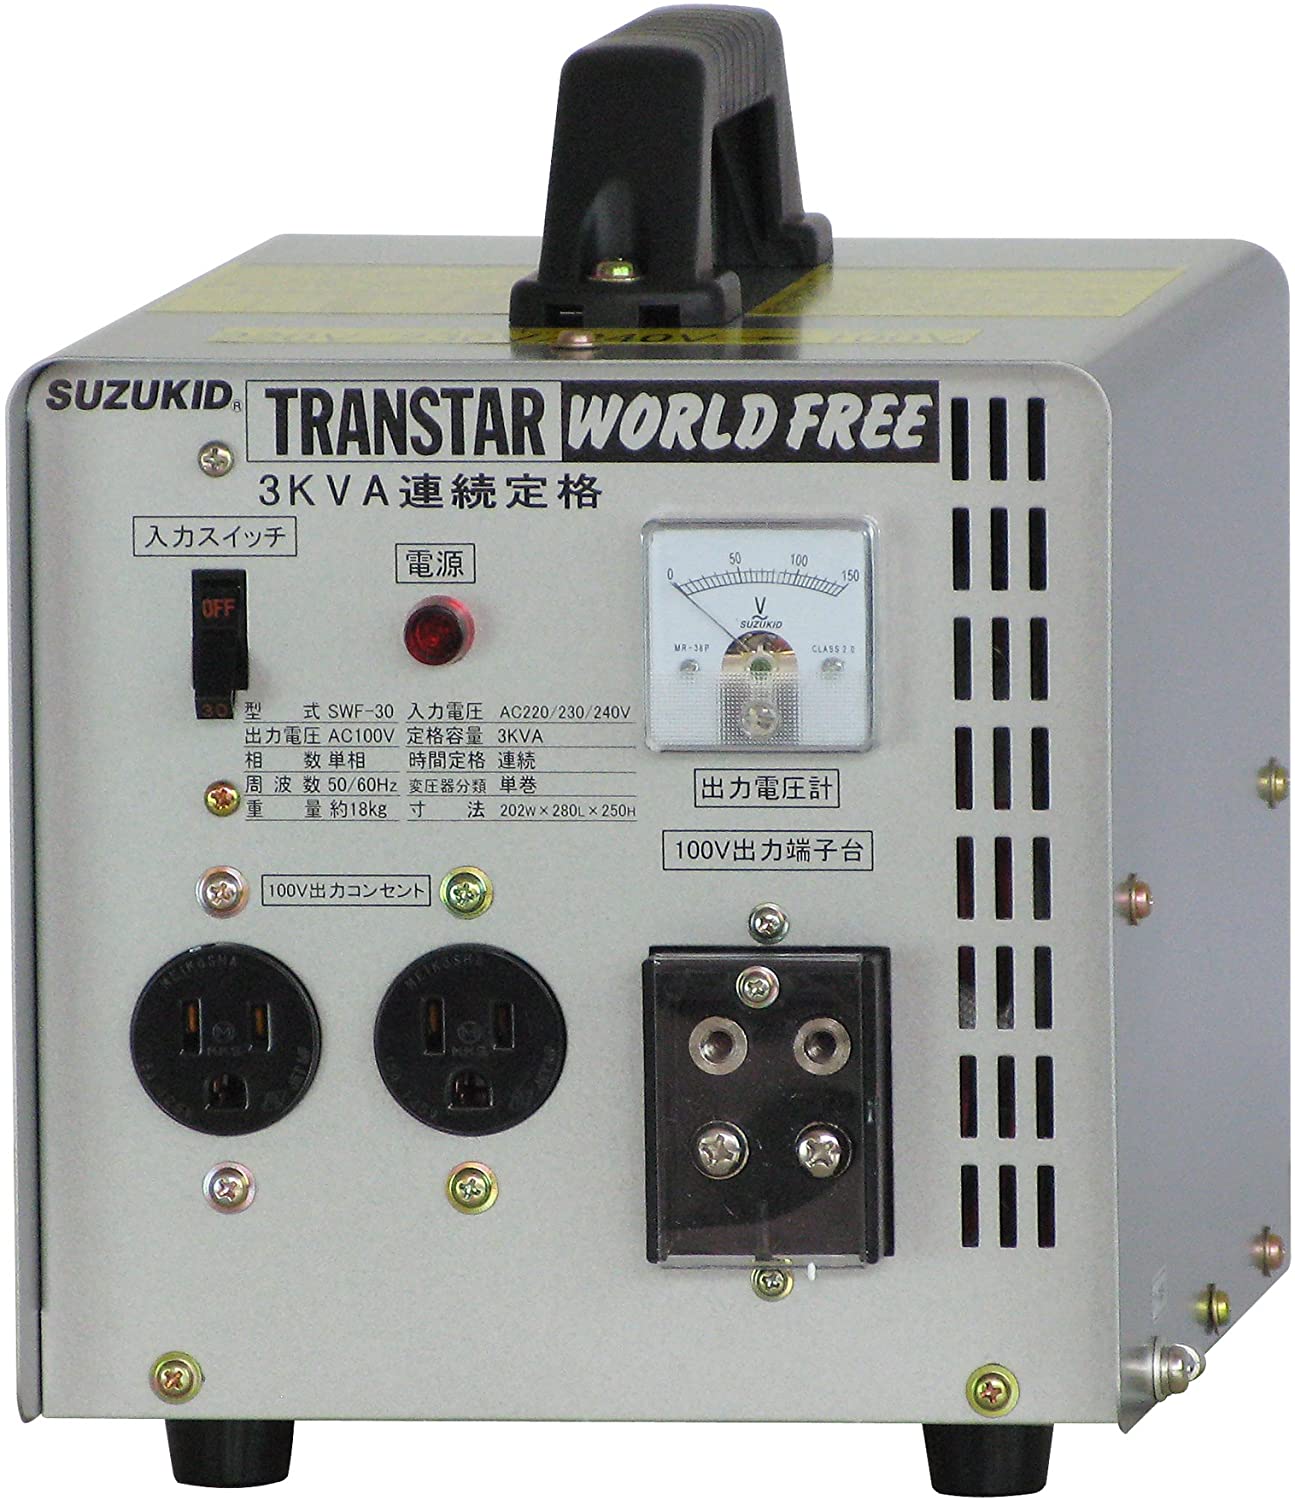 เครื่องเชื่อมไฟฟ้า, ตัวแปลงไฟแบบพกพา, Transtar World Free พิกัด 3 KVA แบบต่อเนื่อง